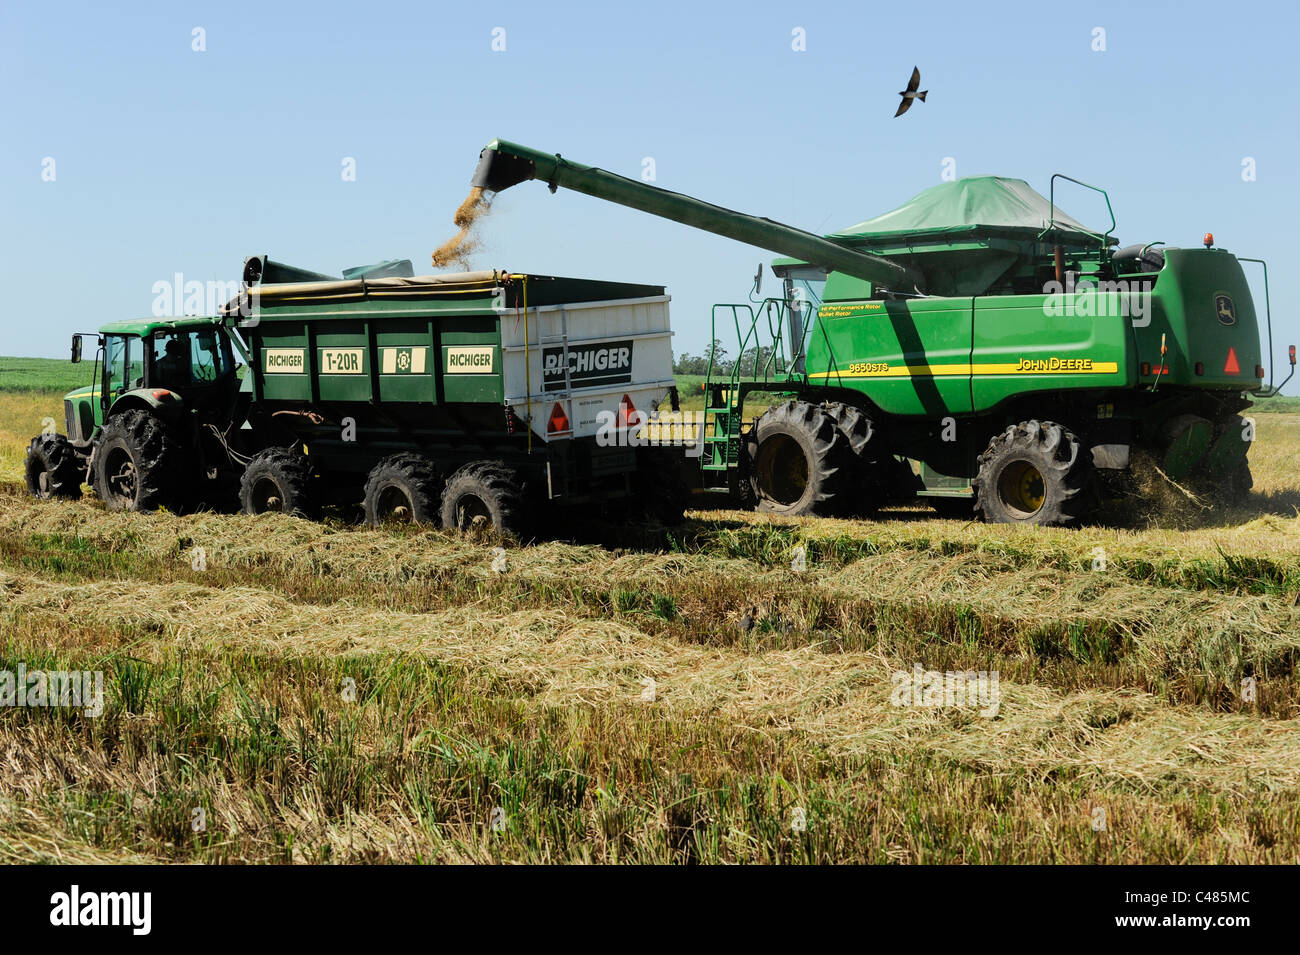 L'URUGUAY Bella Uniòn , 2100 hectares ferme près de fleuve Uruguay, la récolte de riz avec une moissonneuse-batteuse John Deere Banque D'Images